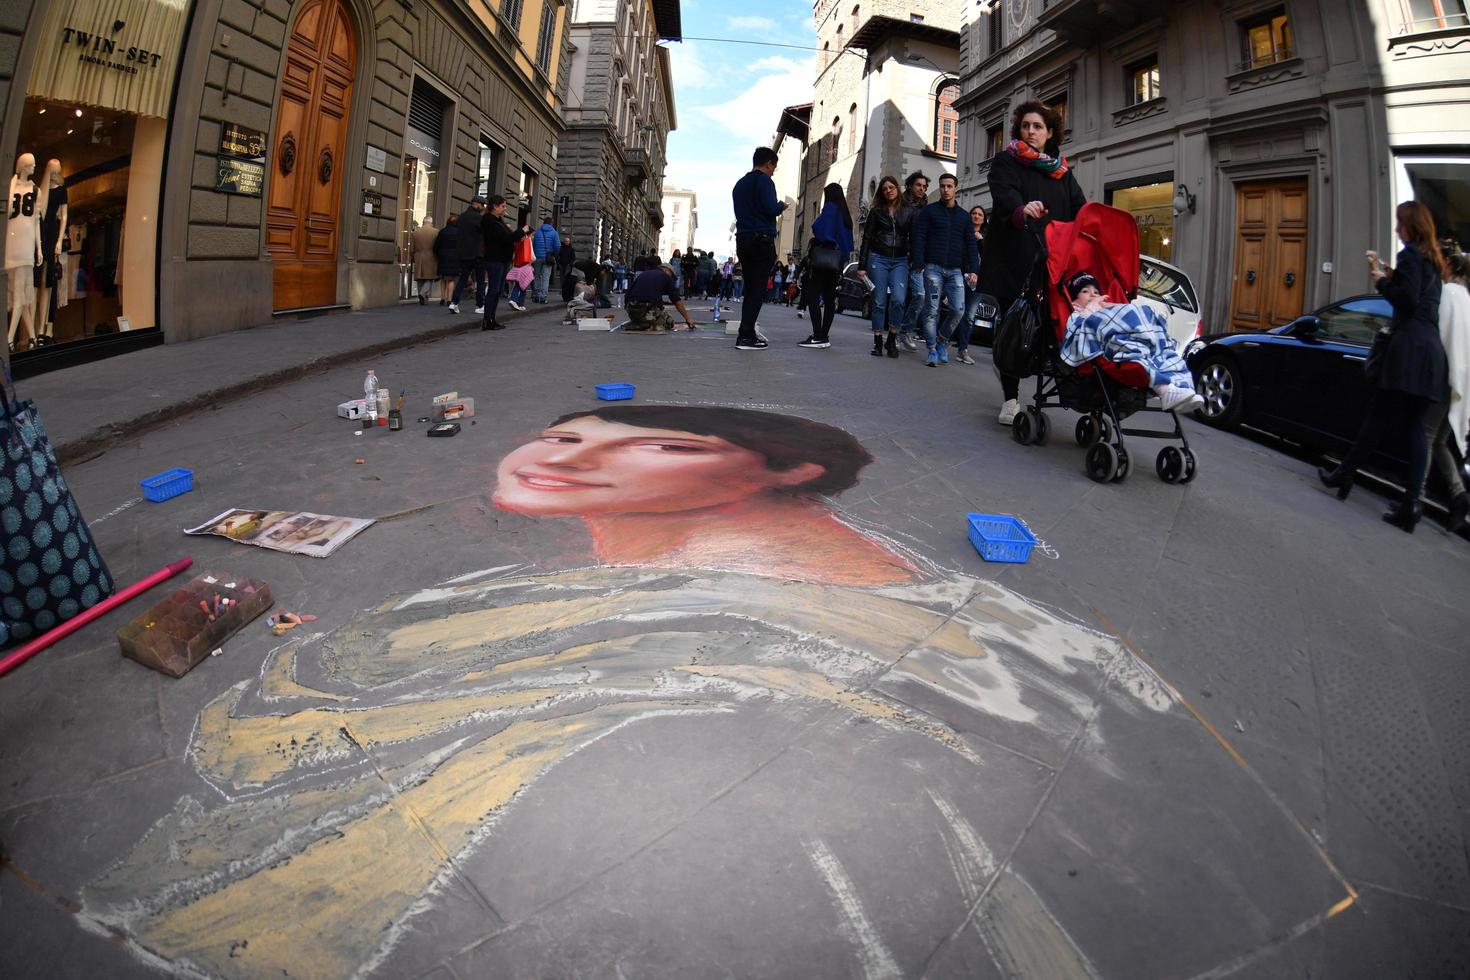 florencia, Italia - marzo 27 2017 - pavimento artista pintura en el calles foto